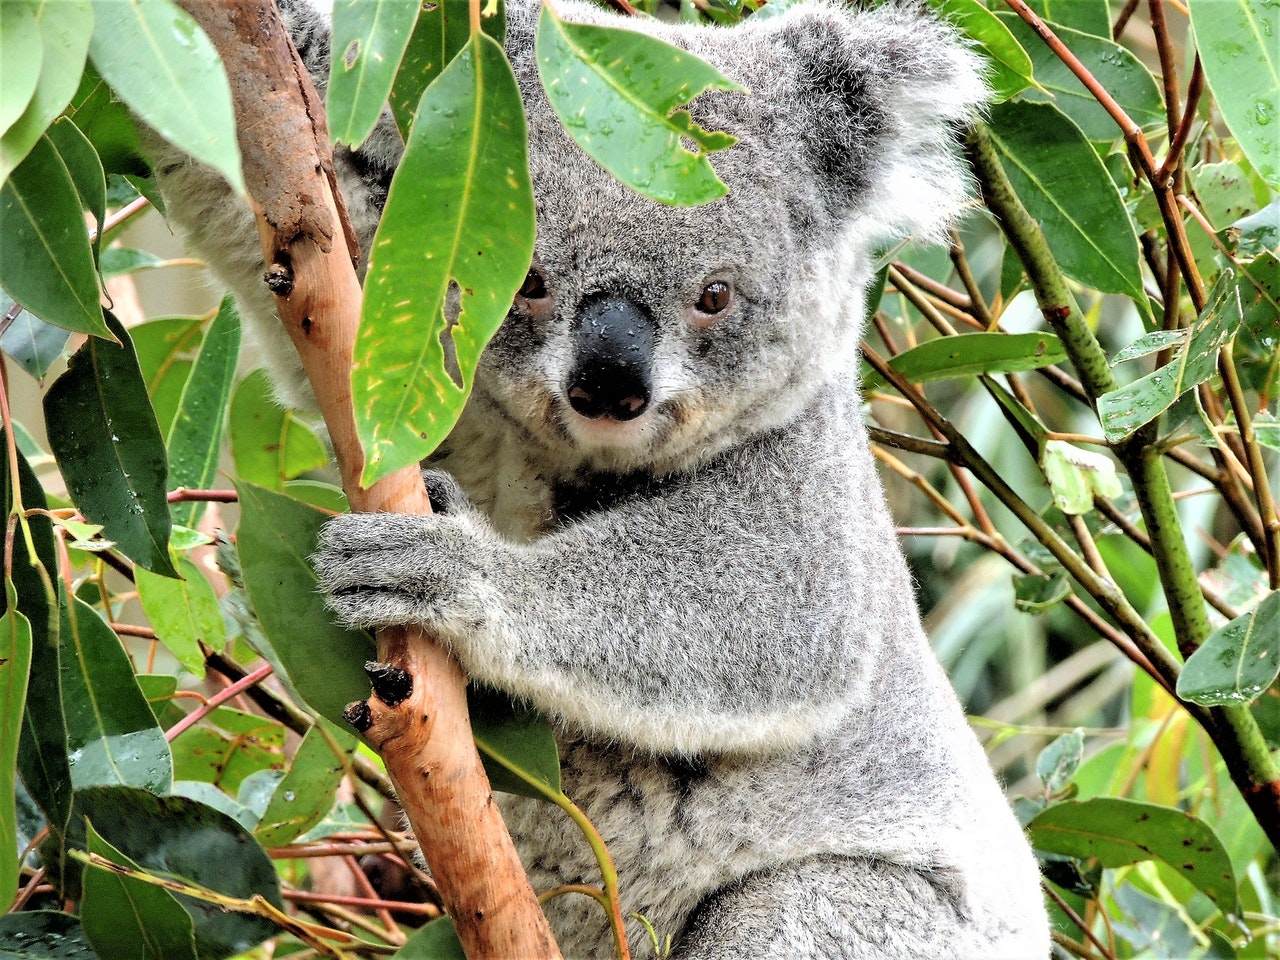 Cute koala in a tree, Australian animal